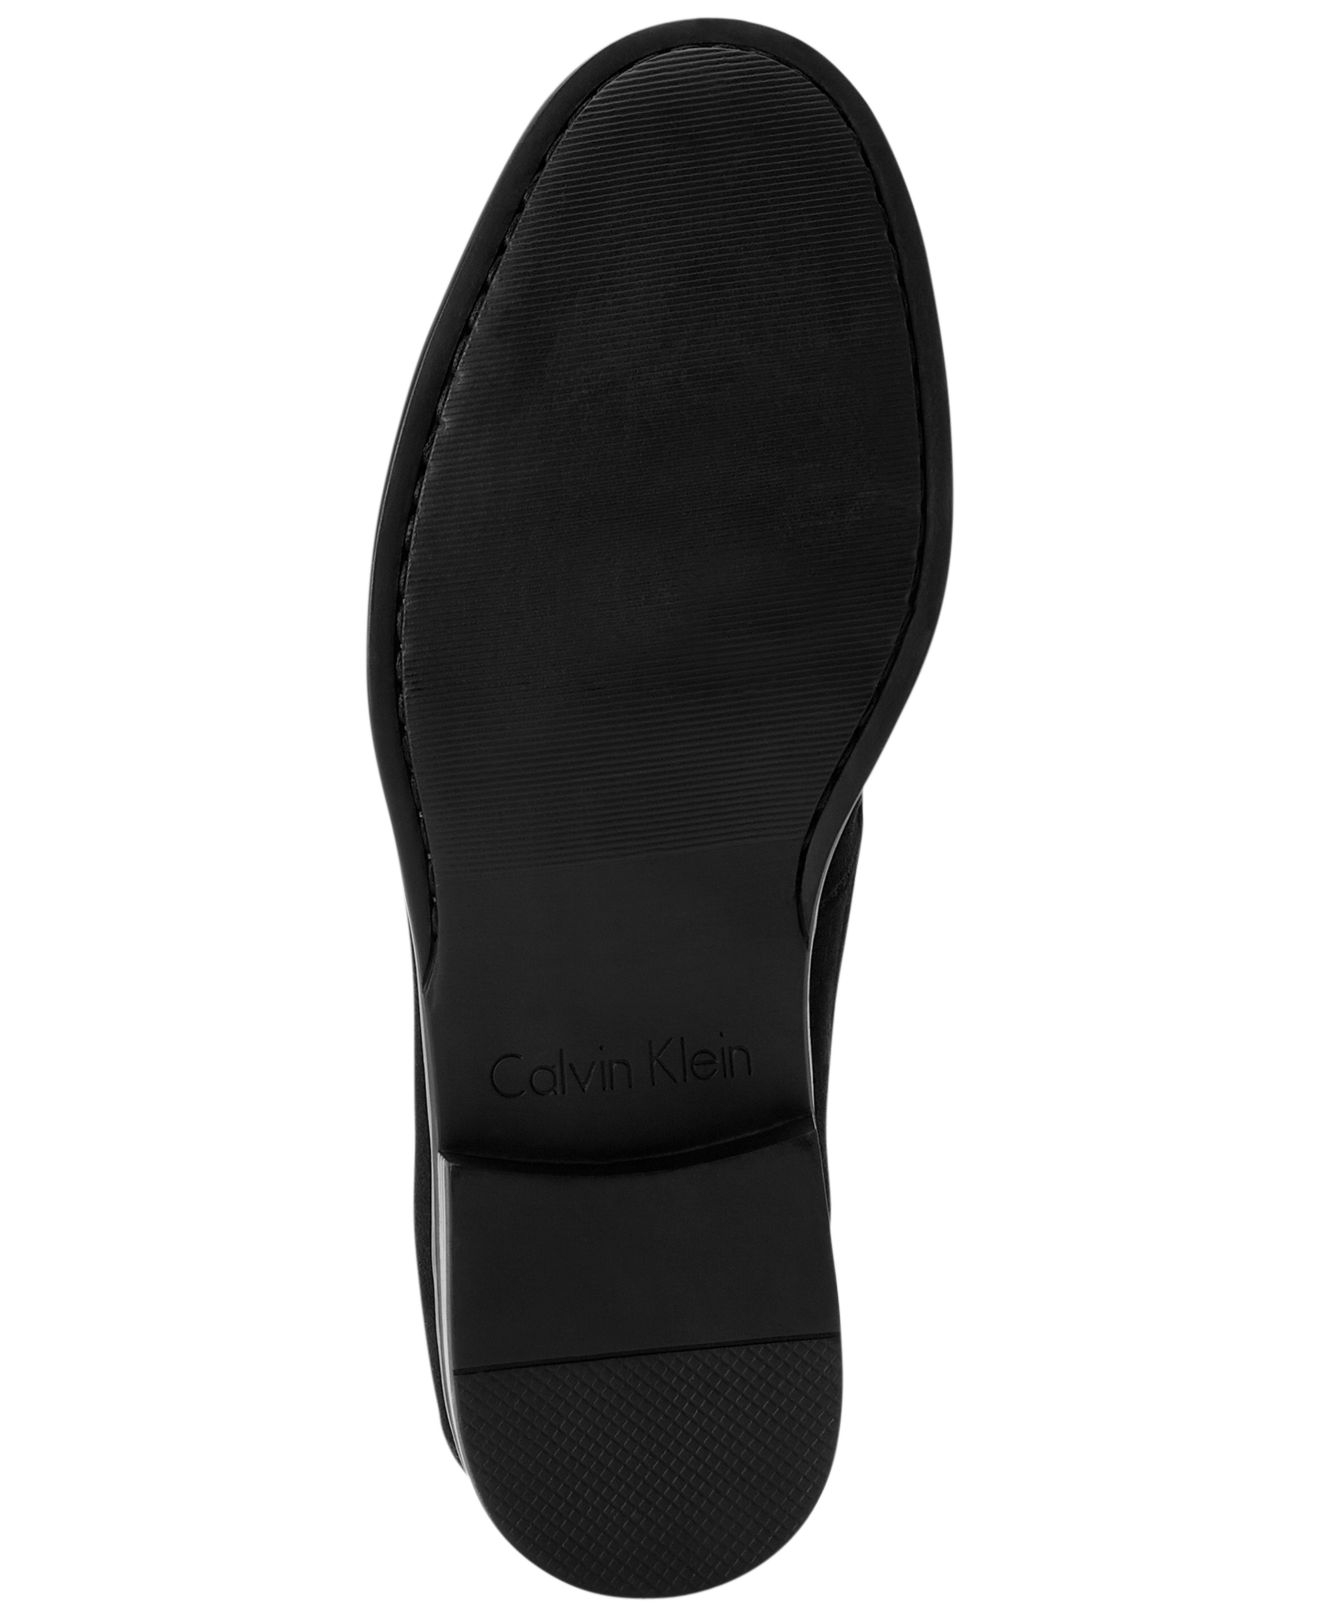 Calvin Klein Sampson Bit Loafers in Black for Men - Lyst